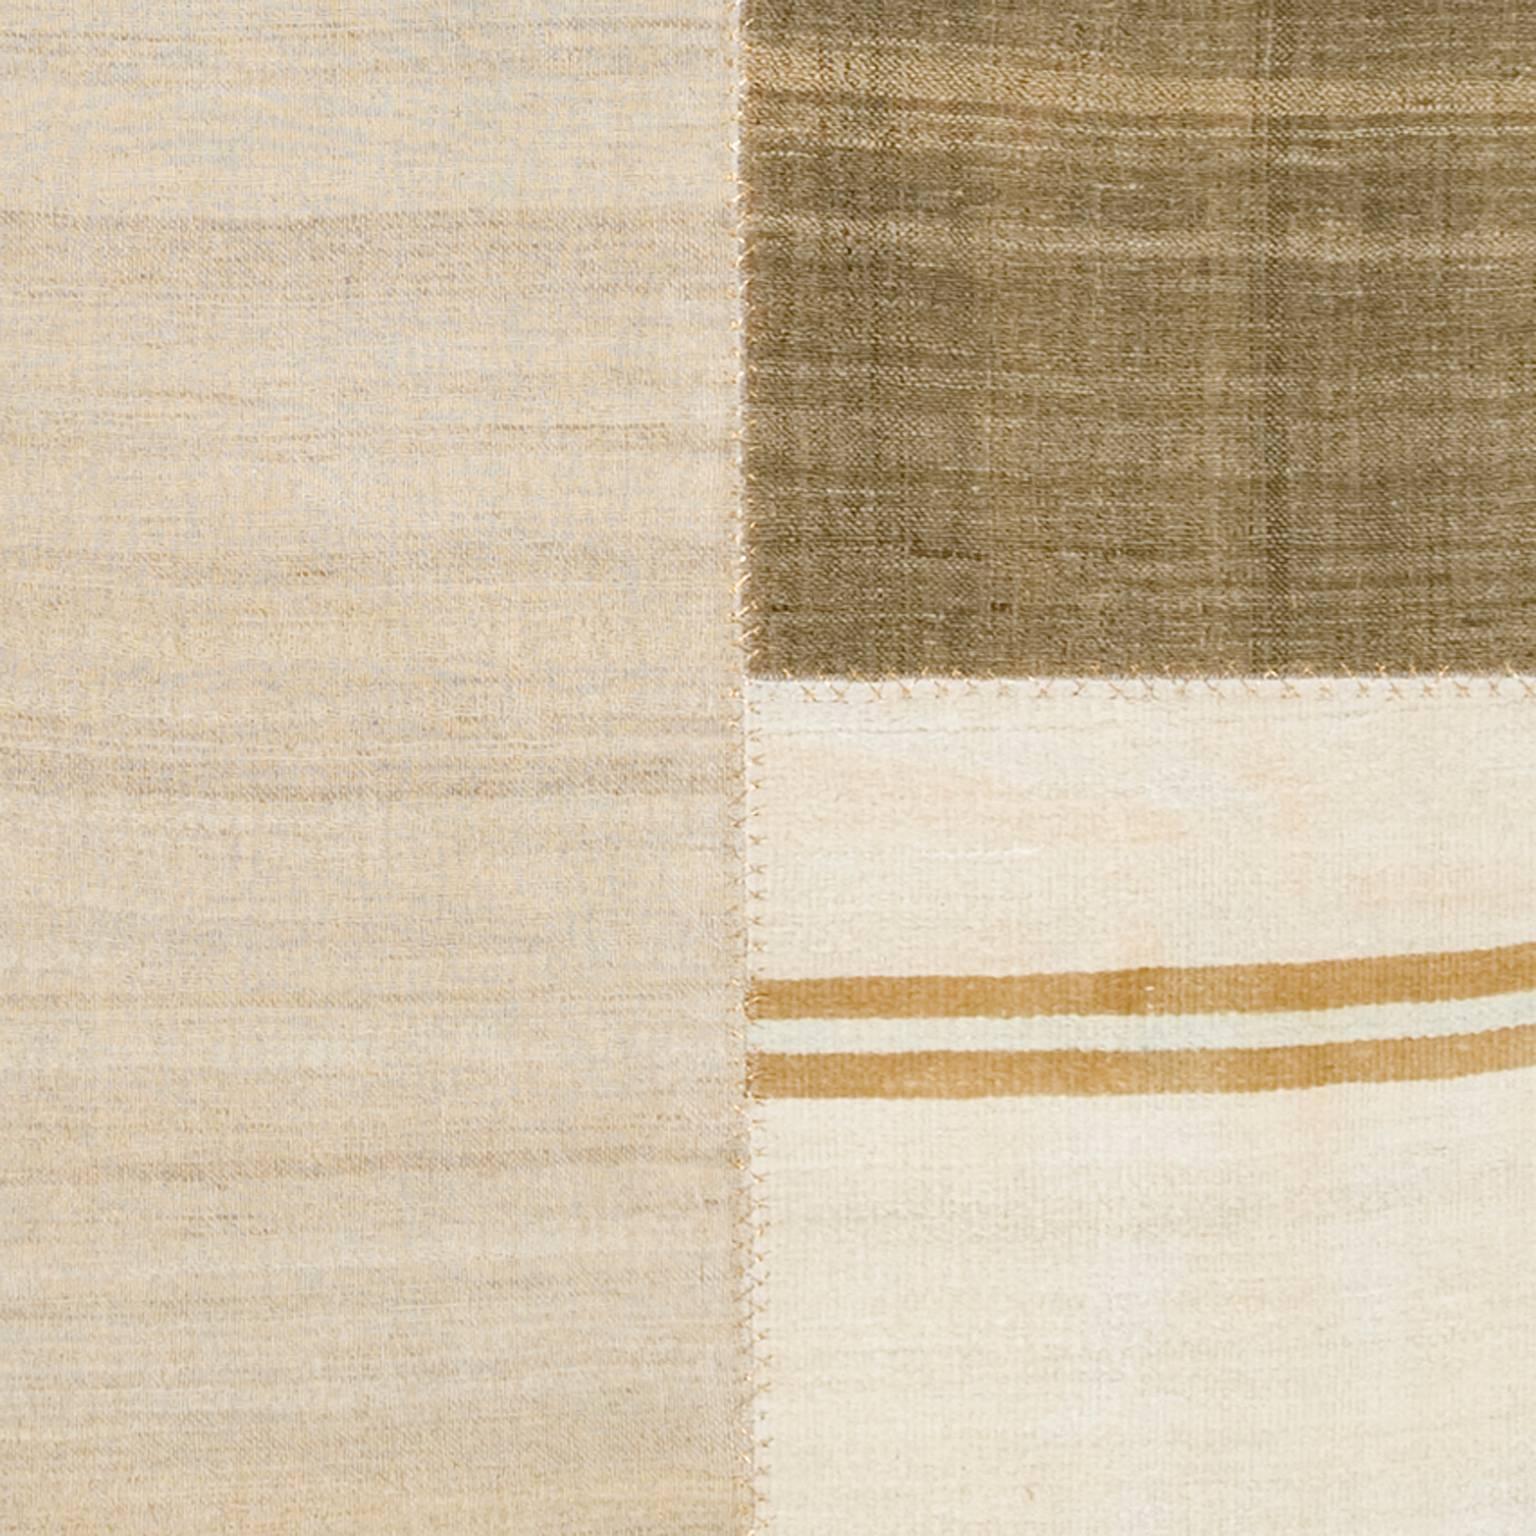 Cotton Mid-20th Century Vintage Kilim Composition Carpet